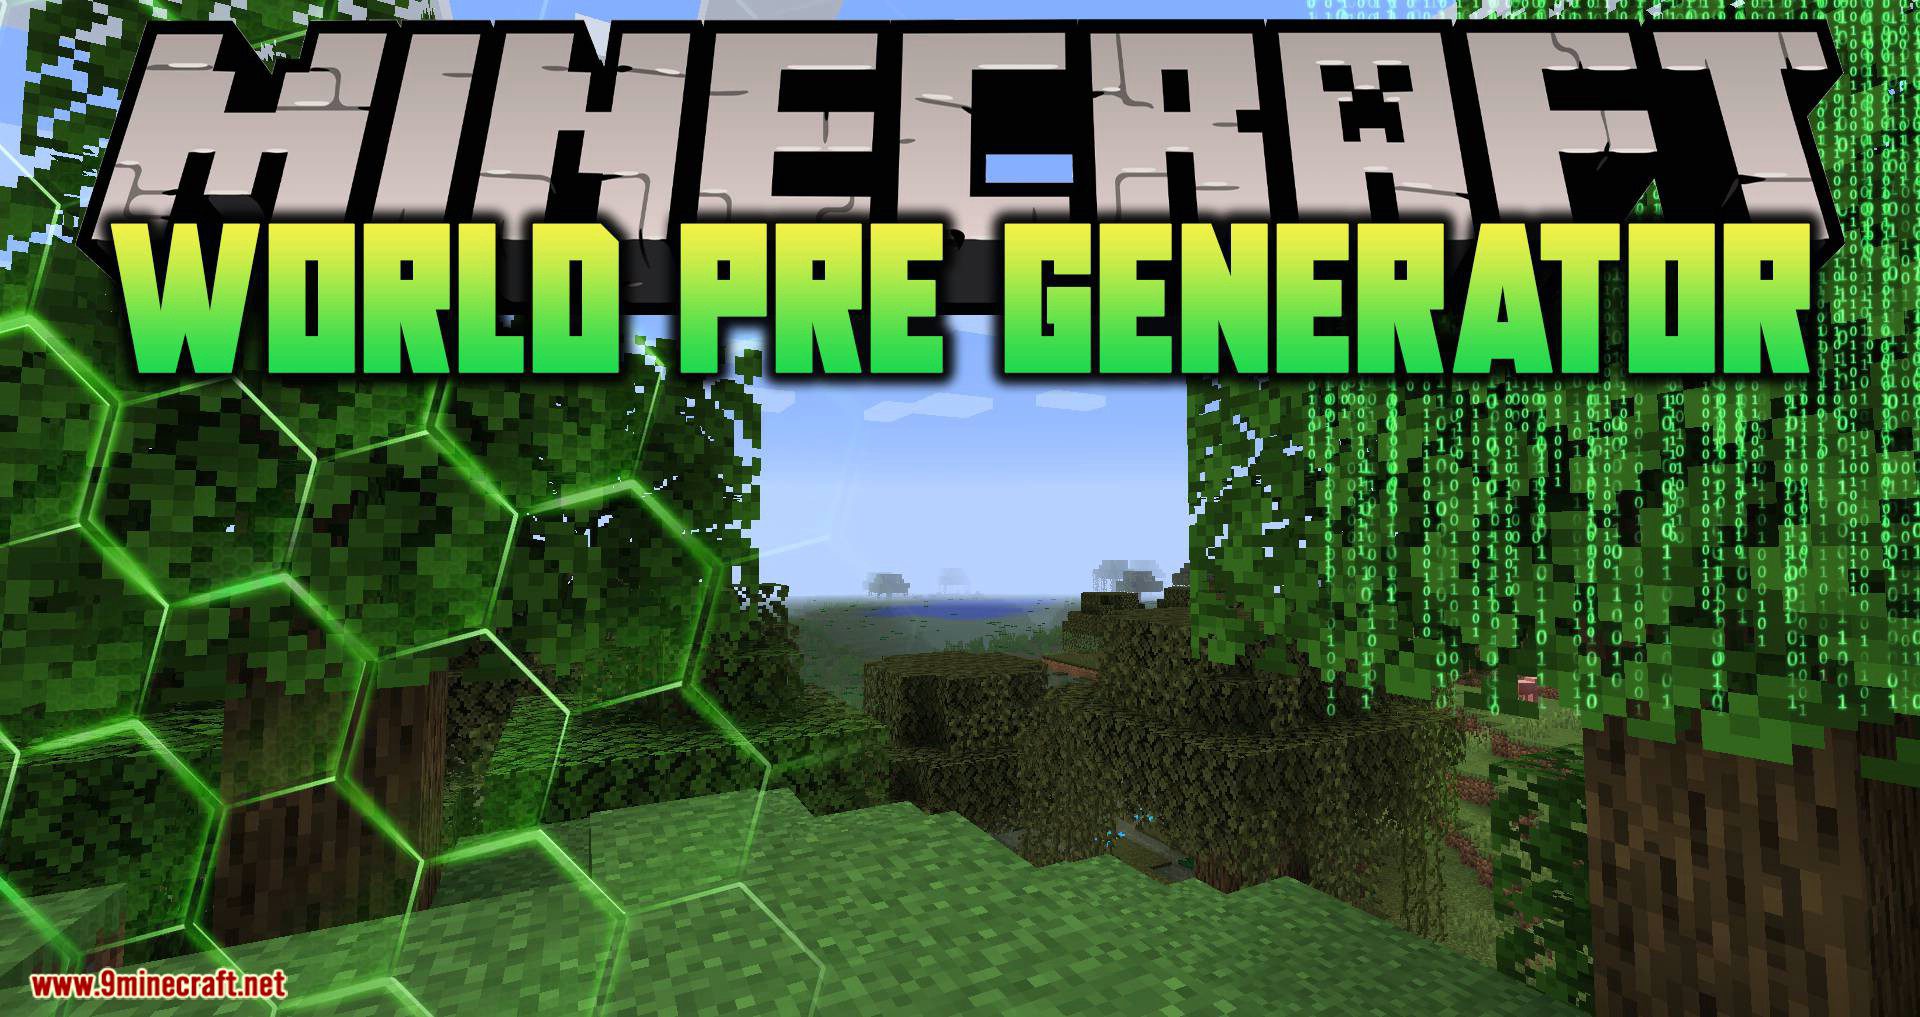 World Pre Generator mod para el logotipo de Minecraft